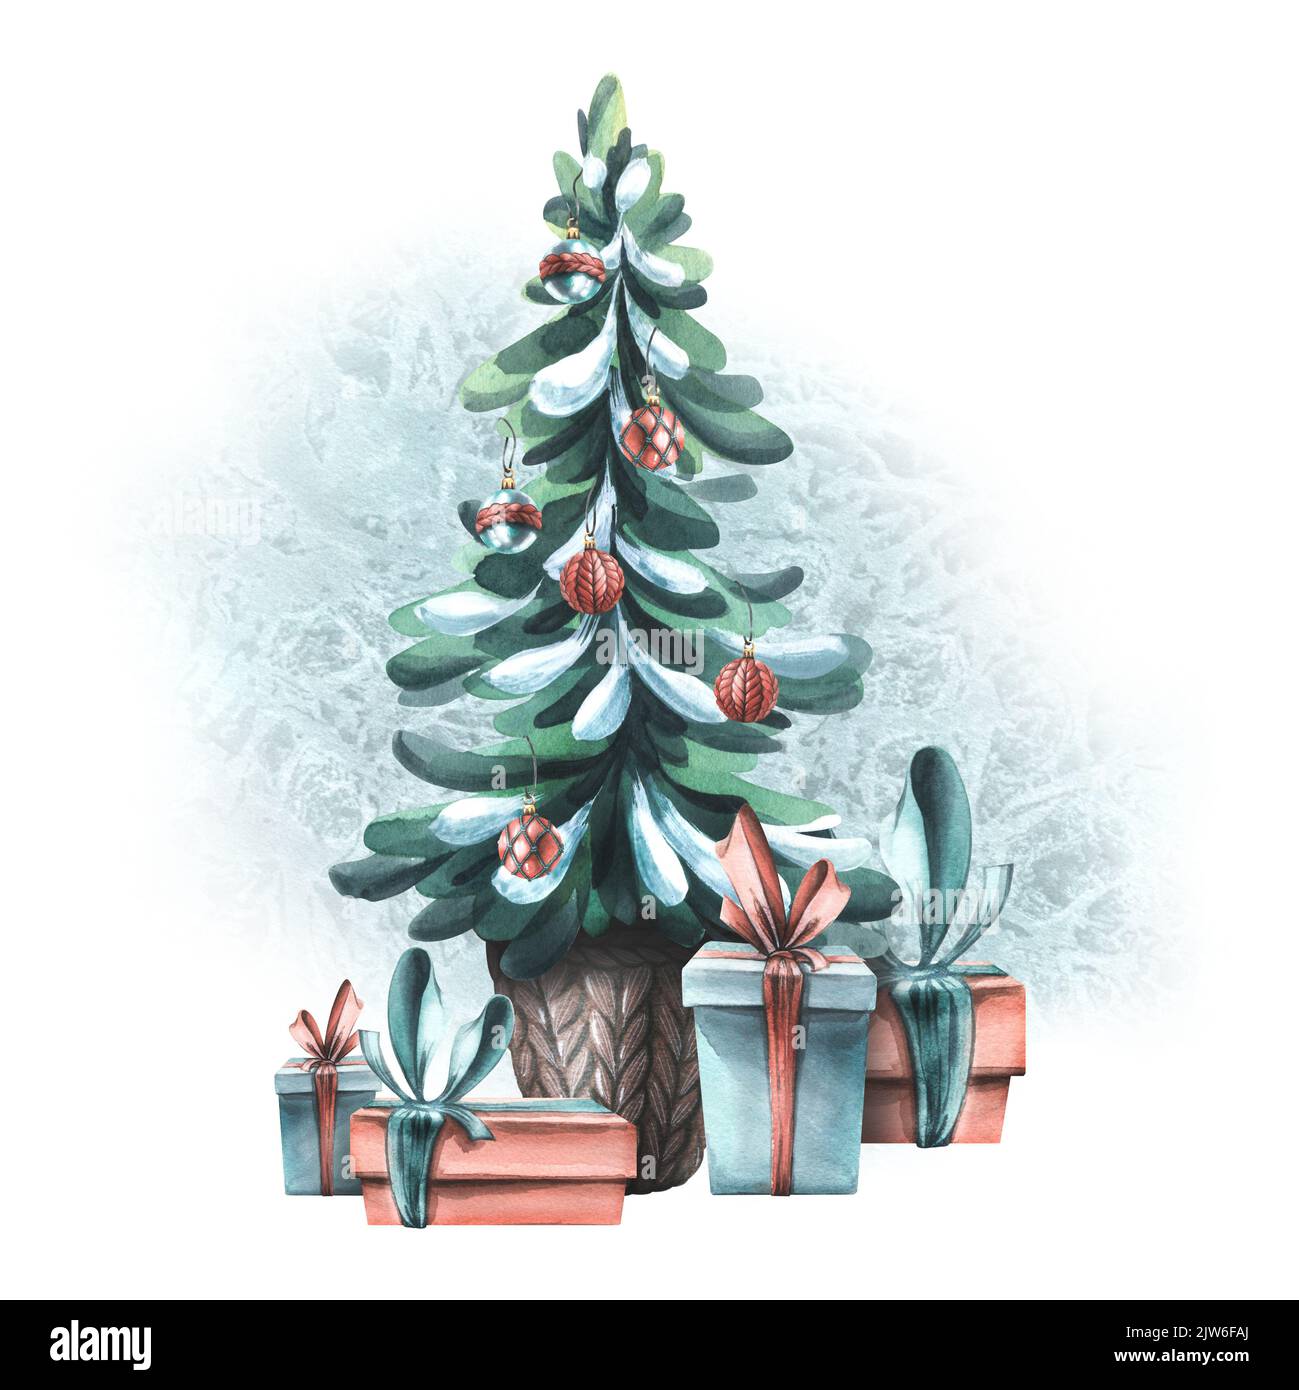 Weihnachtskomposition mit einem Weihnachtsbaum, der mit Luftballons, Geschenken und einem Eisplatz geschmückt ist. Aquarell-Illustration aus einem großen Satz VON GEMÜTLICH Stockfoto